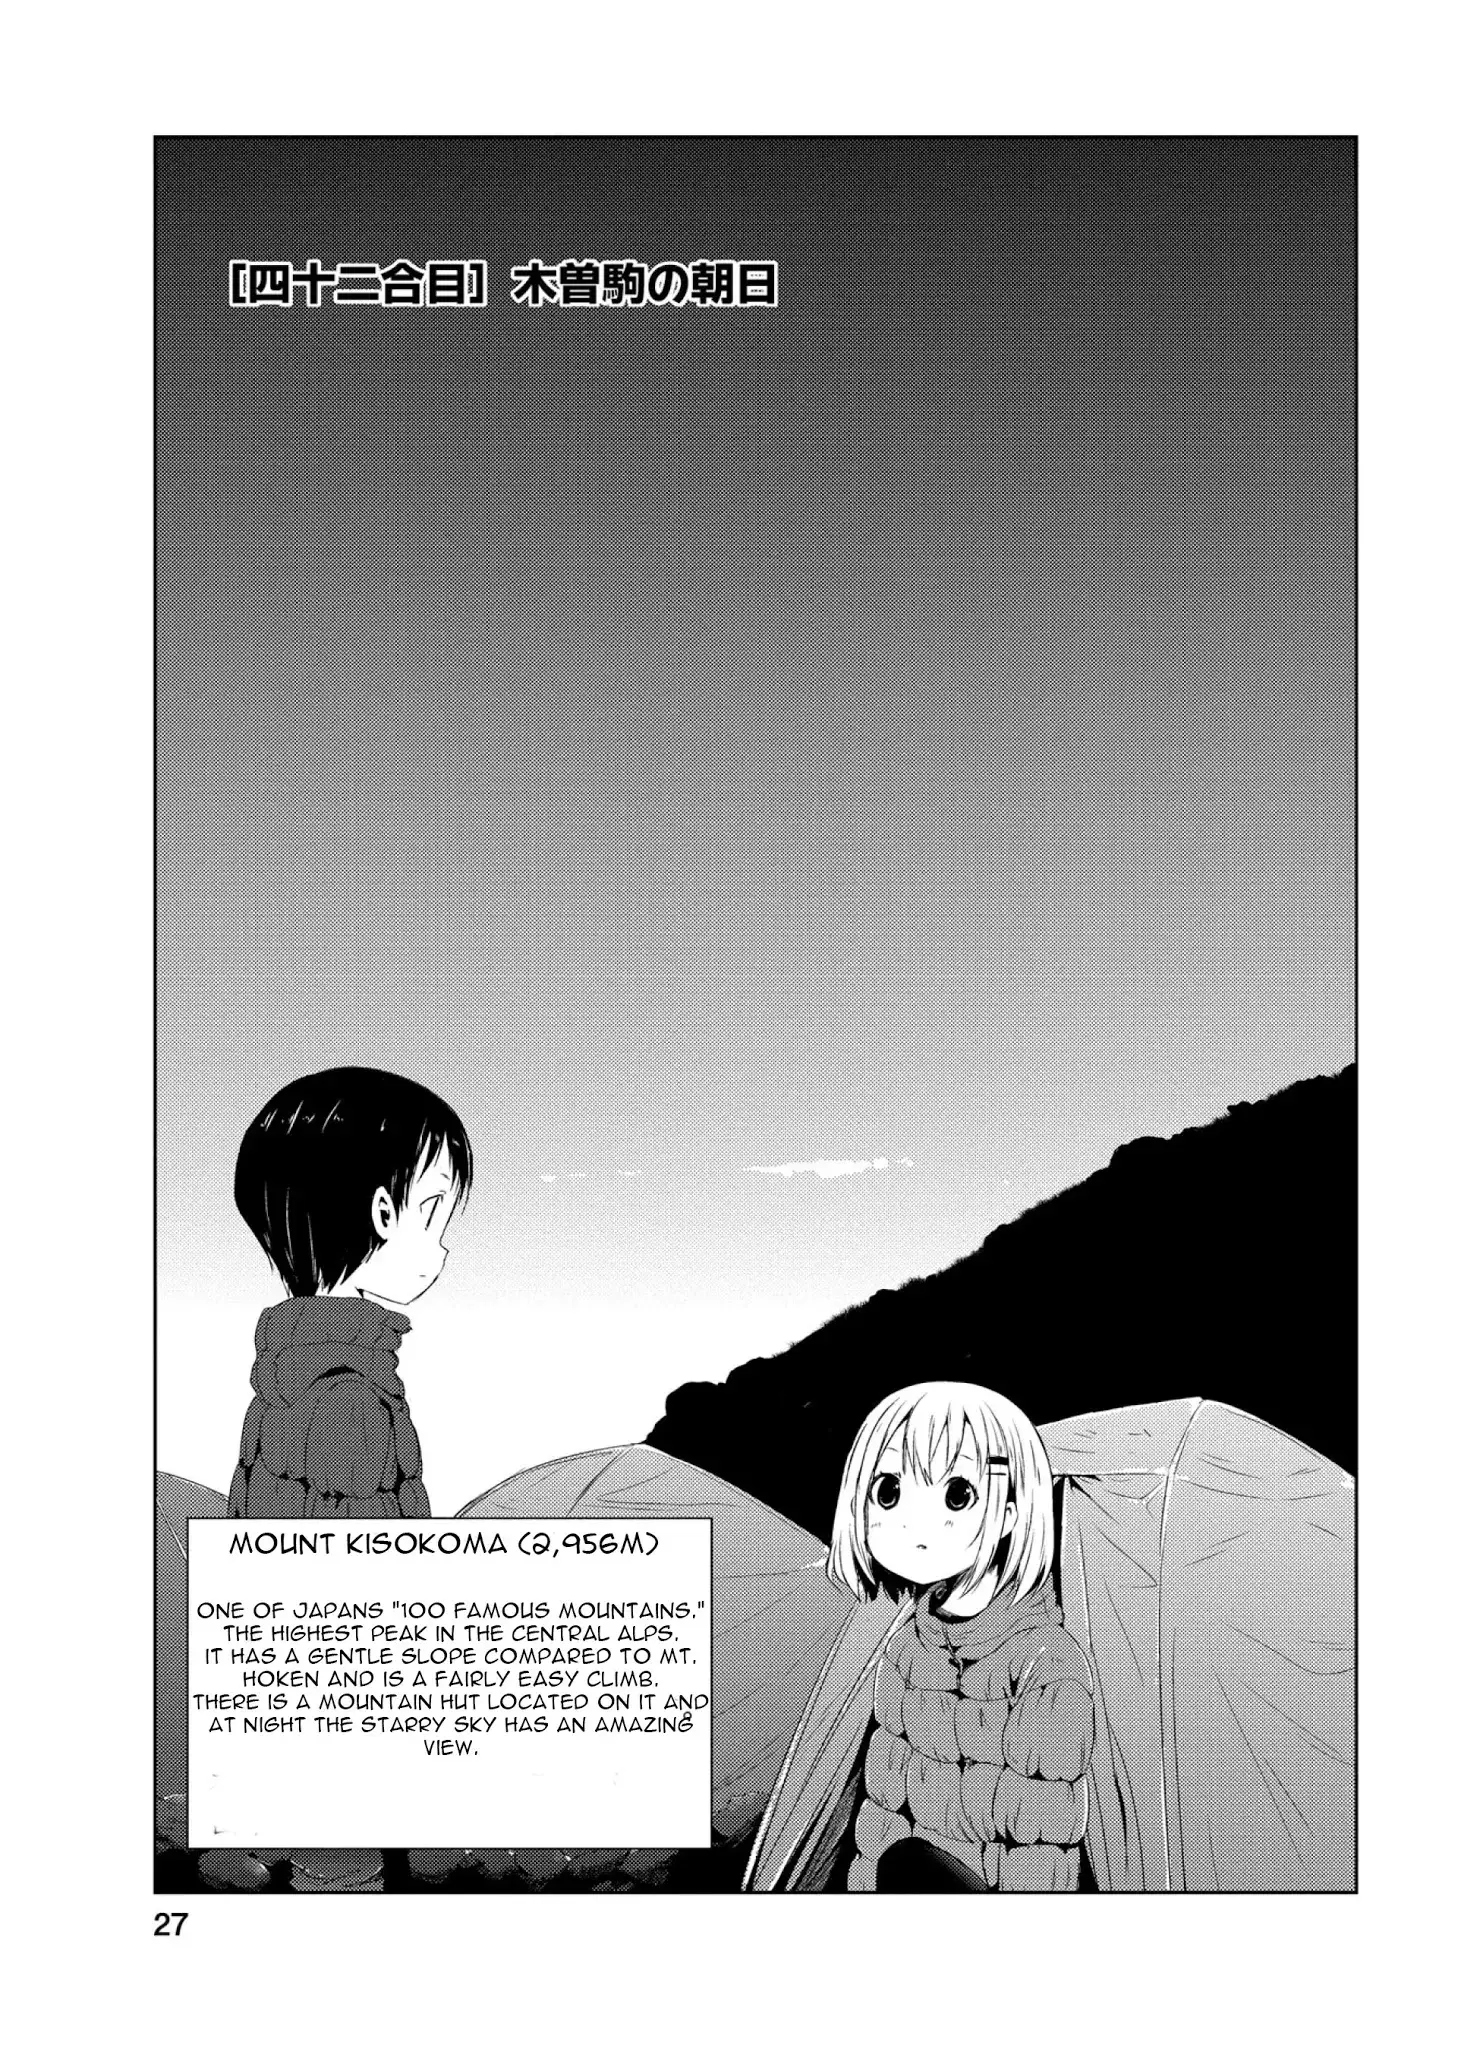 Yama No Susume - 42 page 2